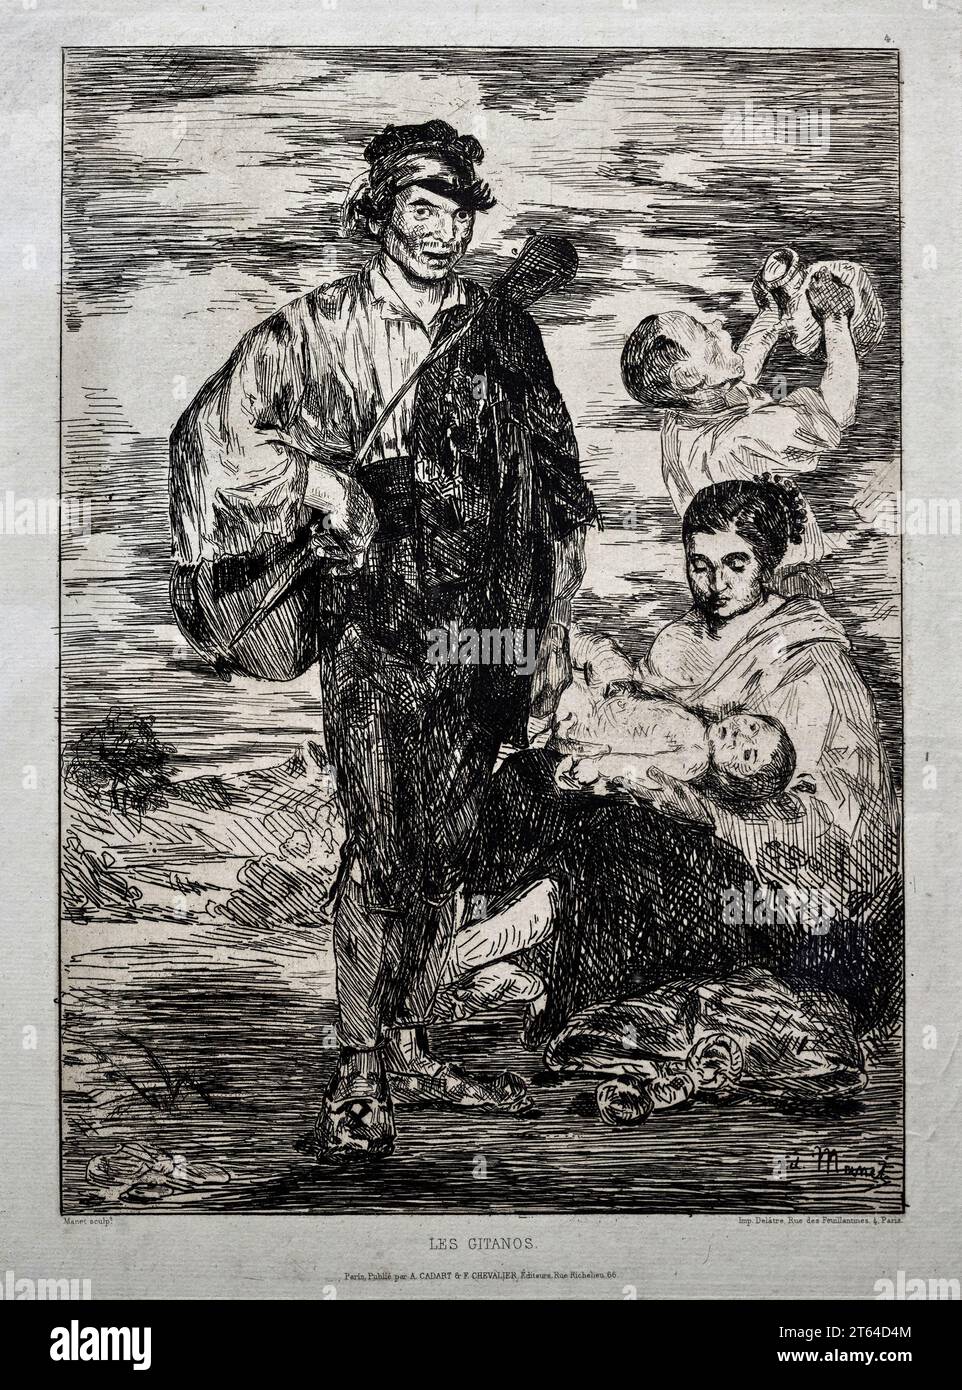 Les gitanes - acquaforte - Edouard Manet - 1862 - collezione privata Banque D'Images